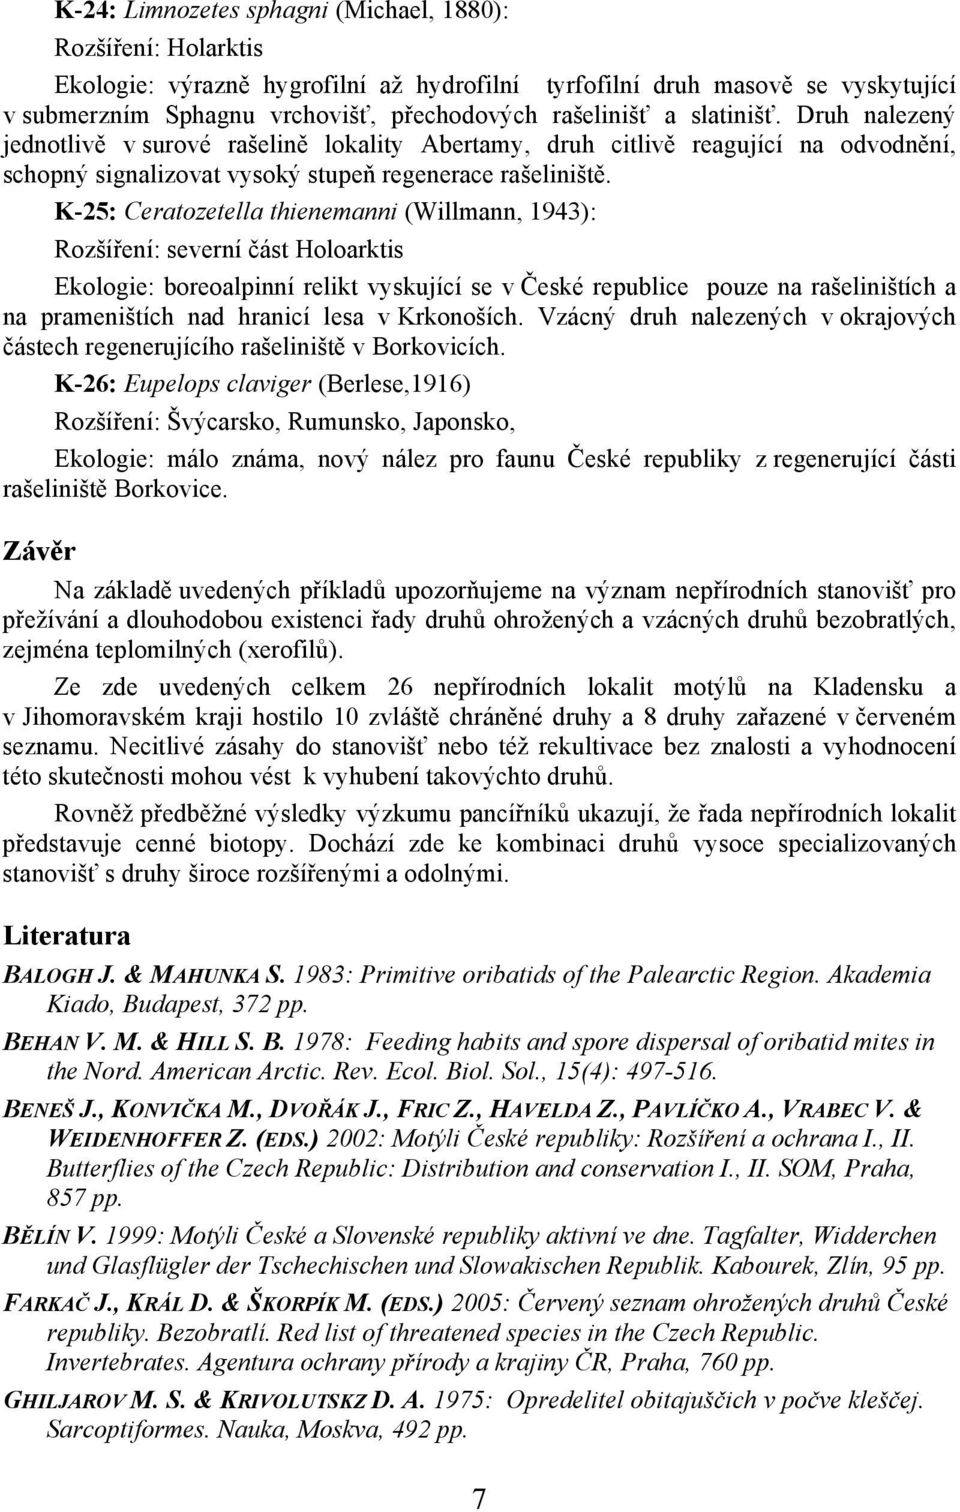 K-25: Ceratozetella thienemanni (Willmann, 1943): Rozšíření: severní část Holoarktis Ekologie: boreoalpinní relikt vyskující se v České republice pouze na rašeliništích a na prameništích nad hranicí